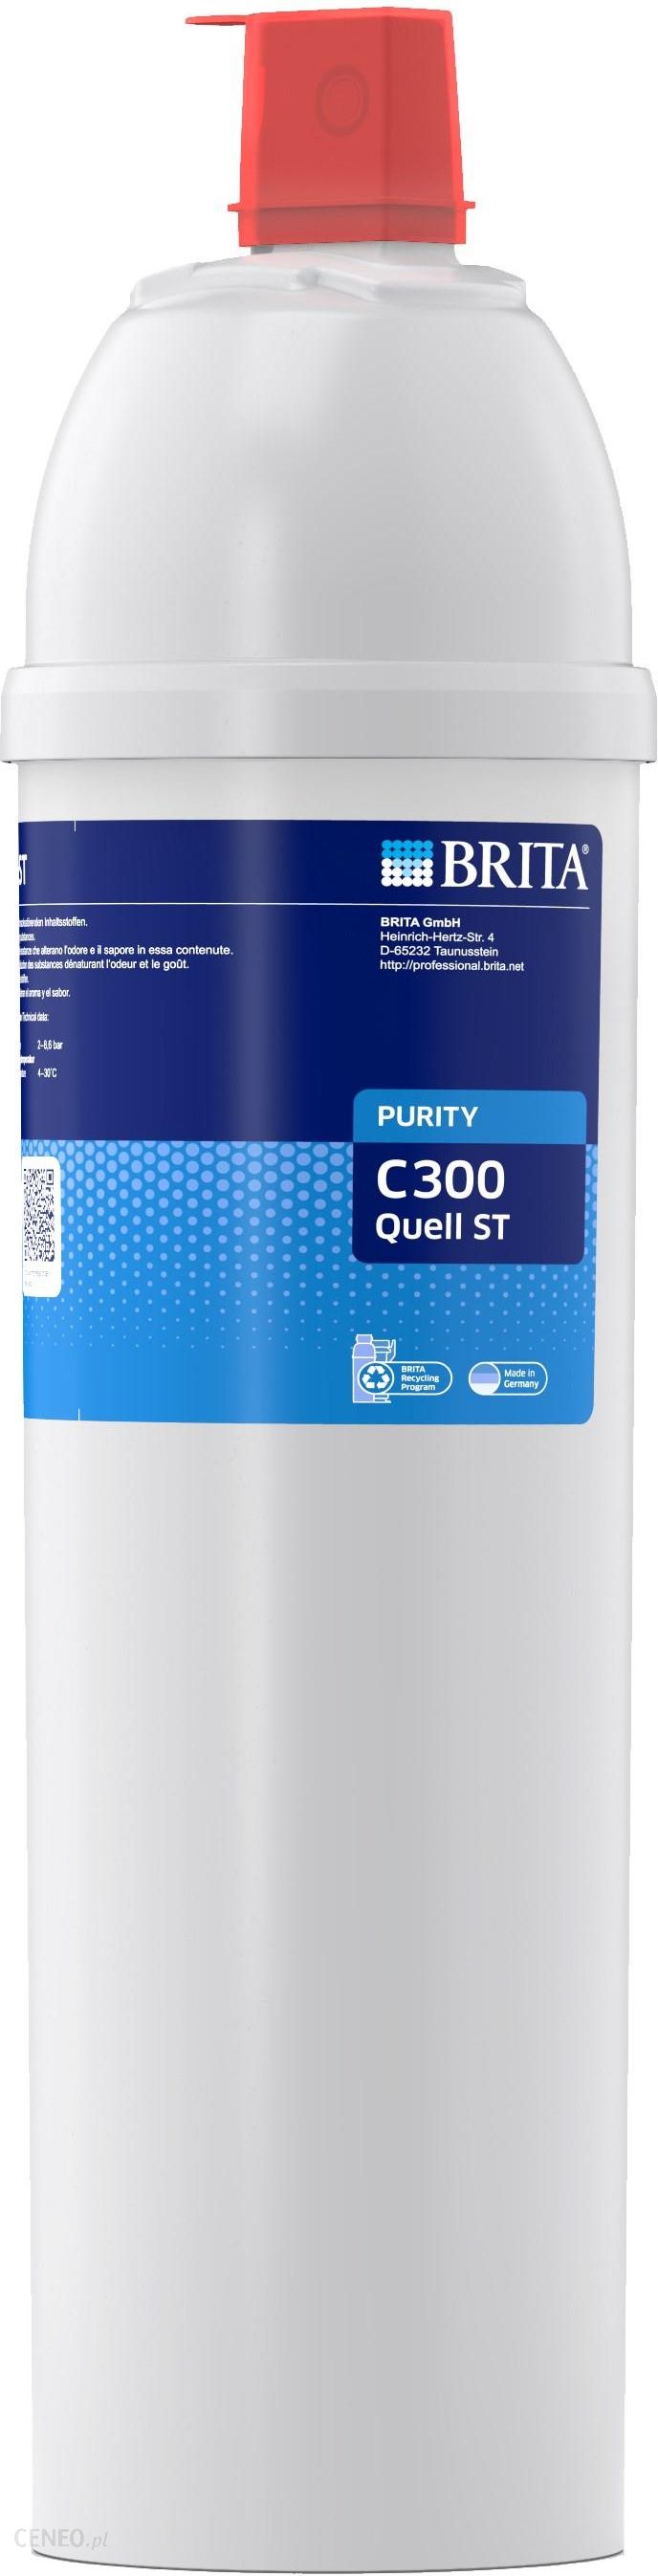 PURITY C 300 ST filtr wymienny - Ceny i opinie - Ceneo.pl